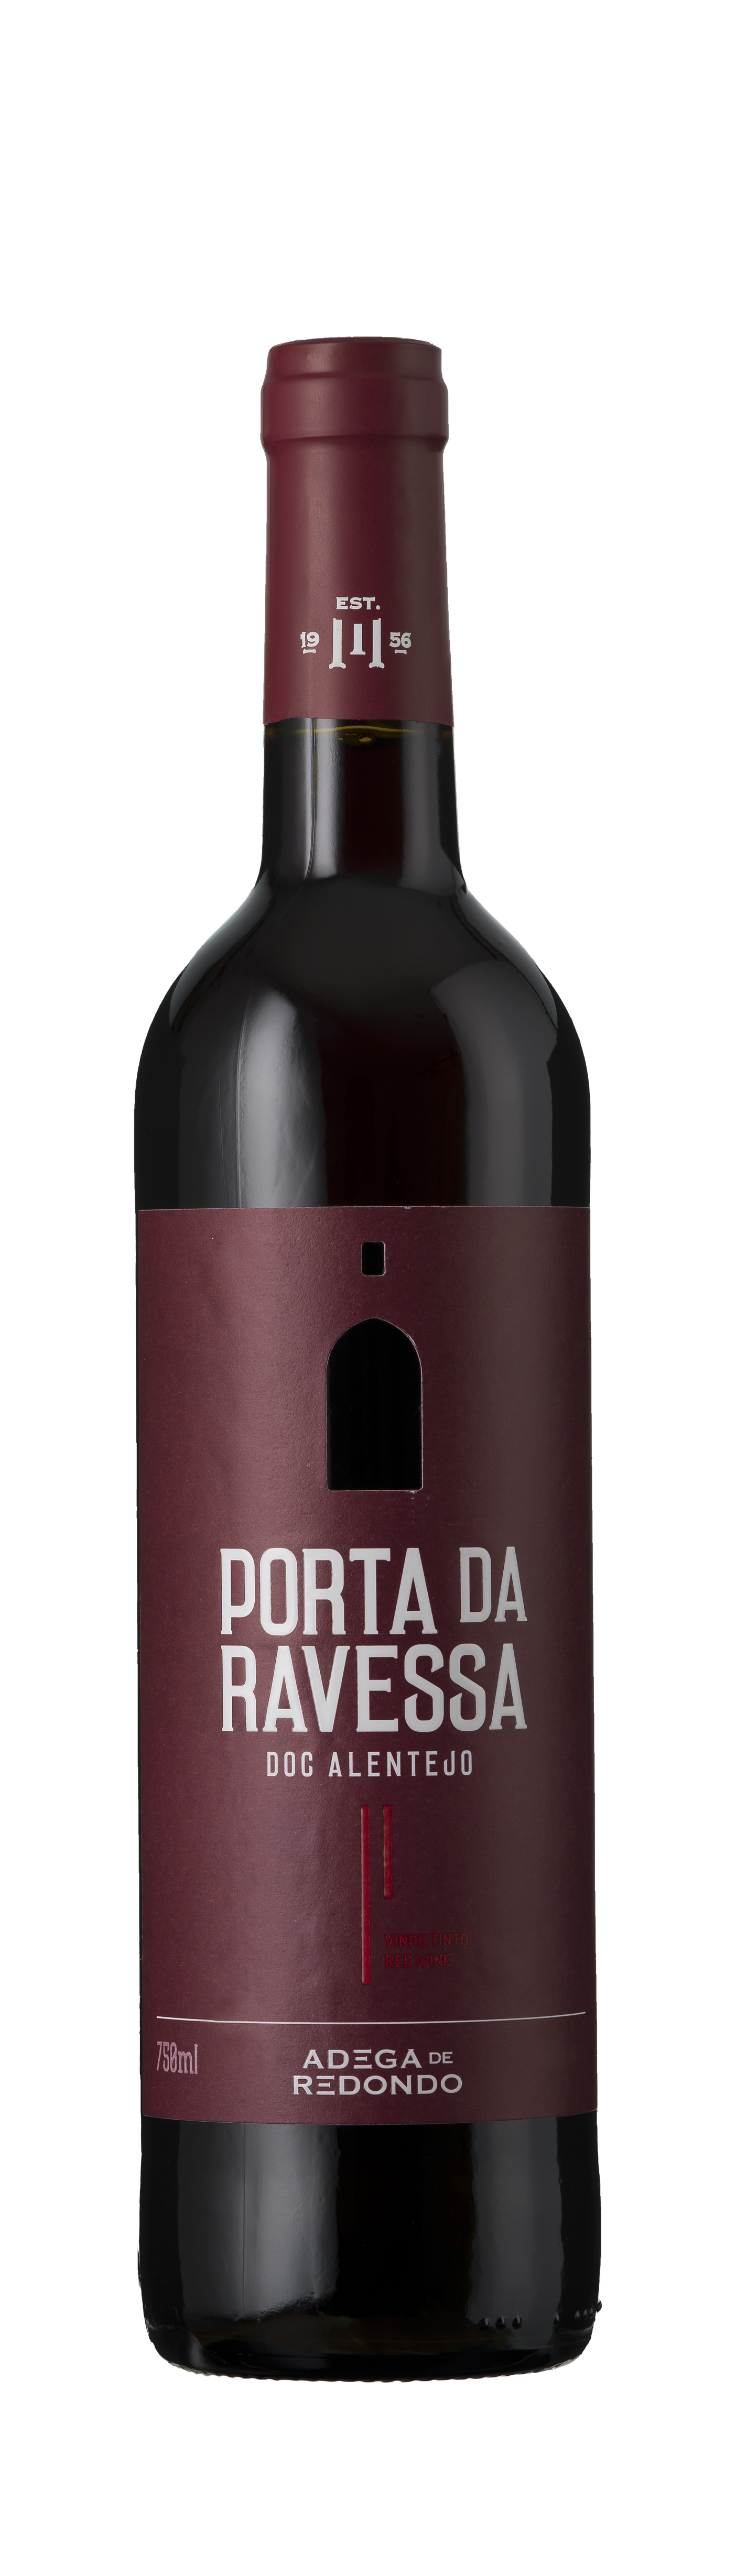 Adega de Redondo, - Alliance Porta Alentejo, Portugal, Ravessa Wine da 2020 DOC Tinto